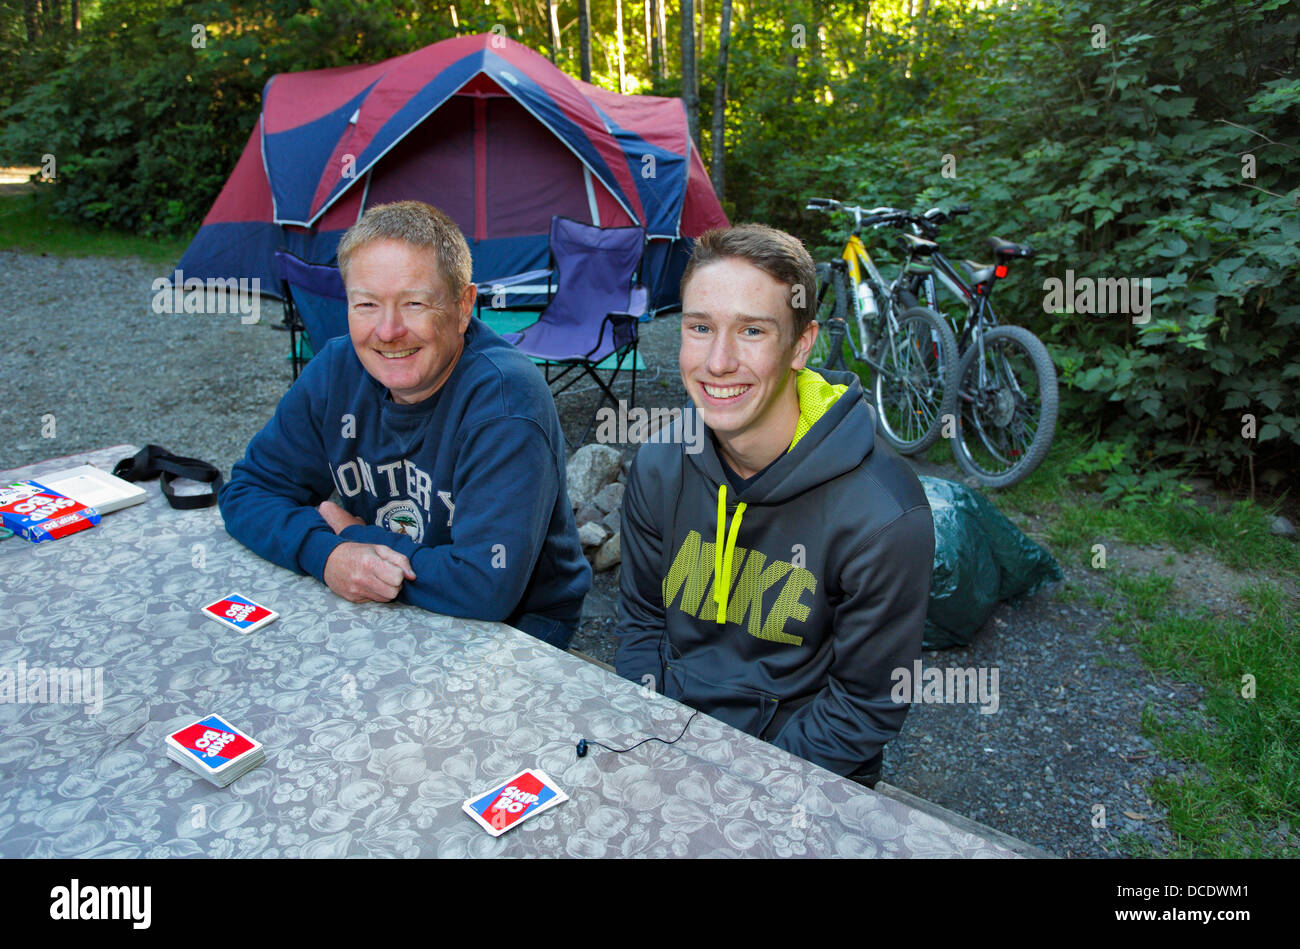 Vater und Sohn auf Familie camping Reise-Ucluelet, Britisch-Kolumbien, Kanada. Stockfoto